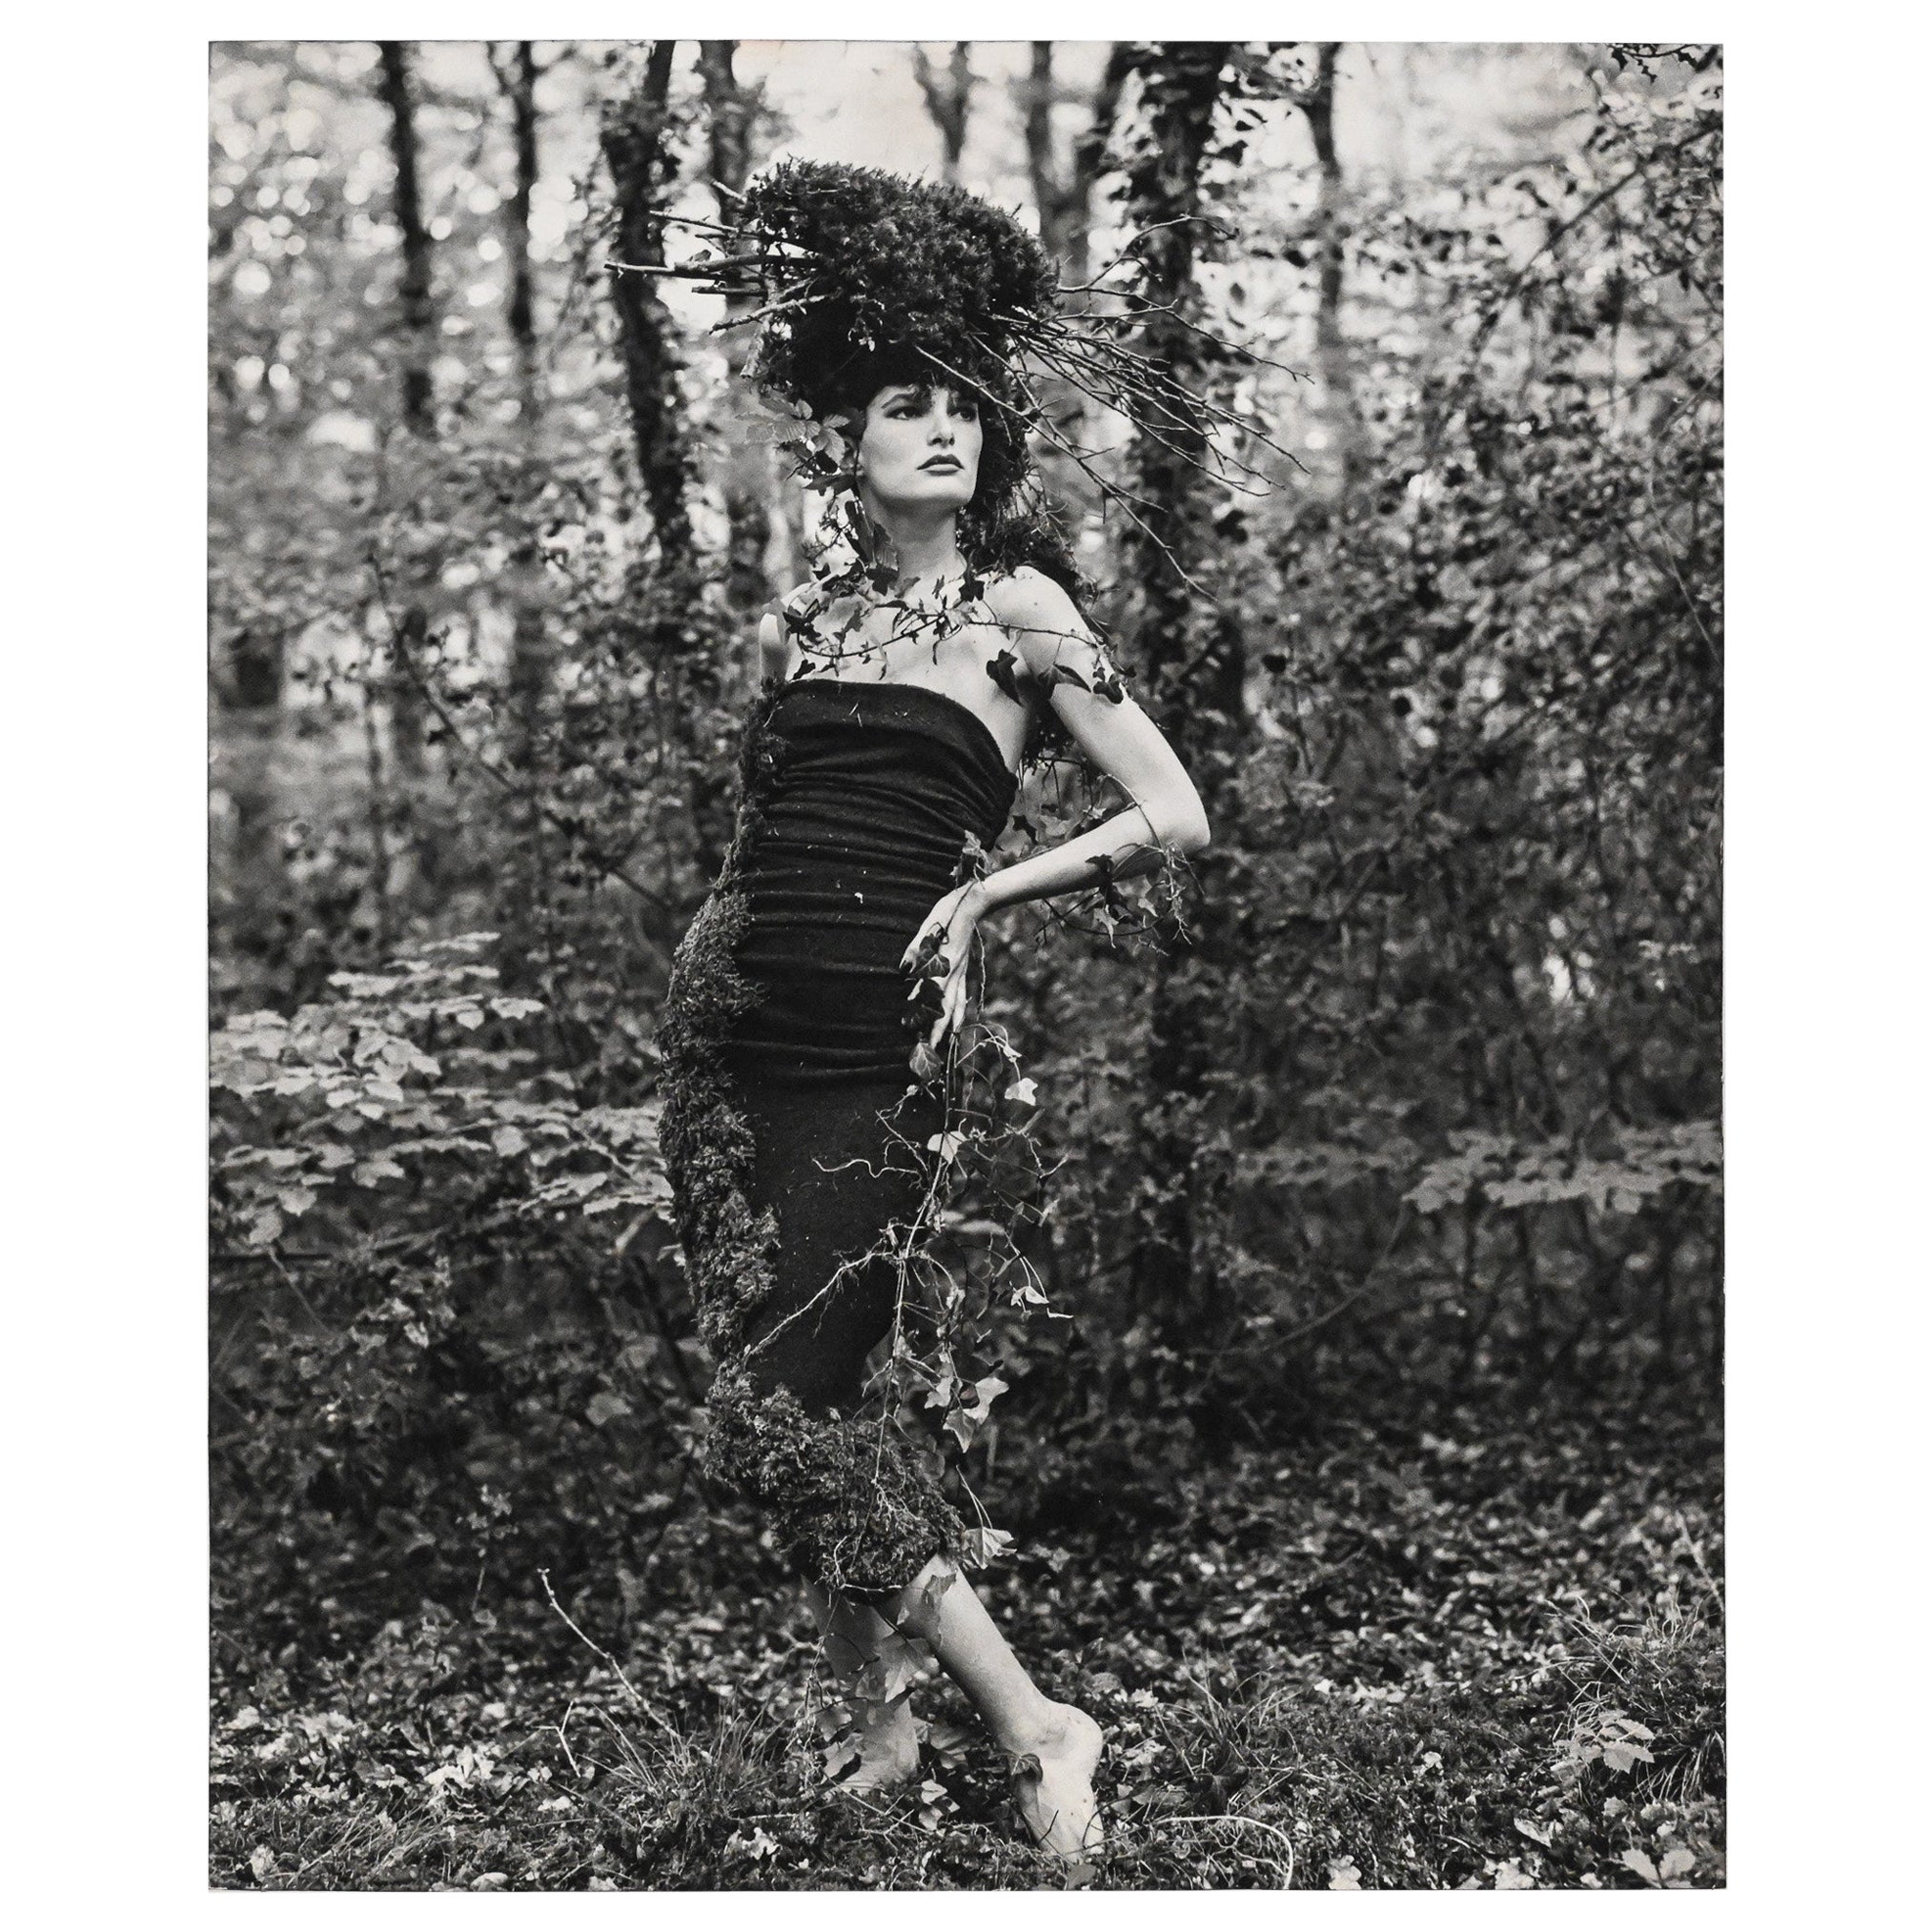 Originalfotografie des Modells im Wald von Bruce Weber für Karl Lagerfeld 2